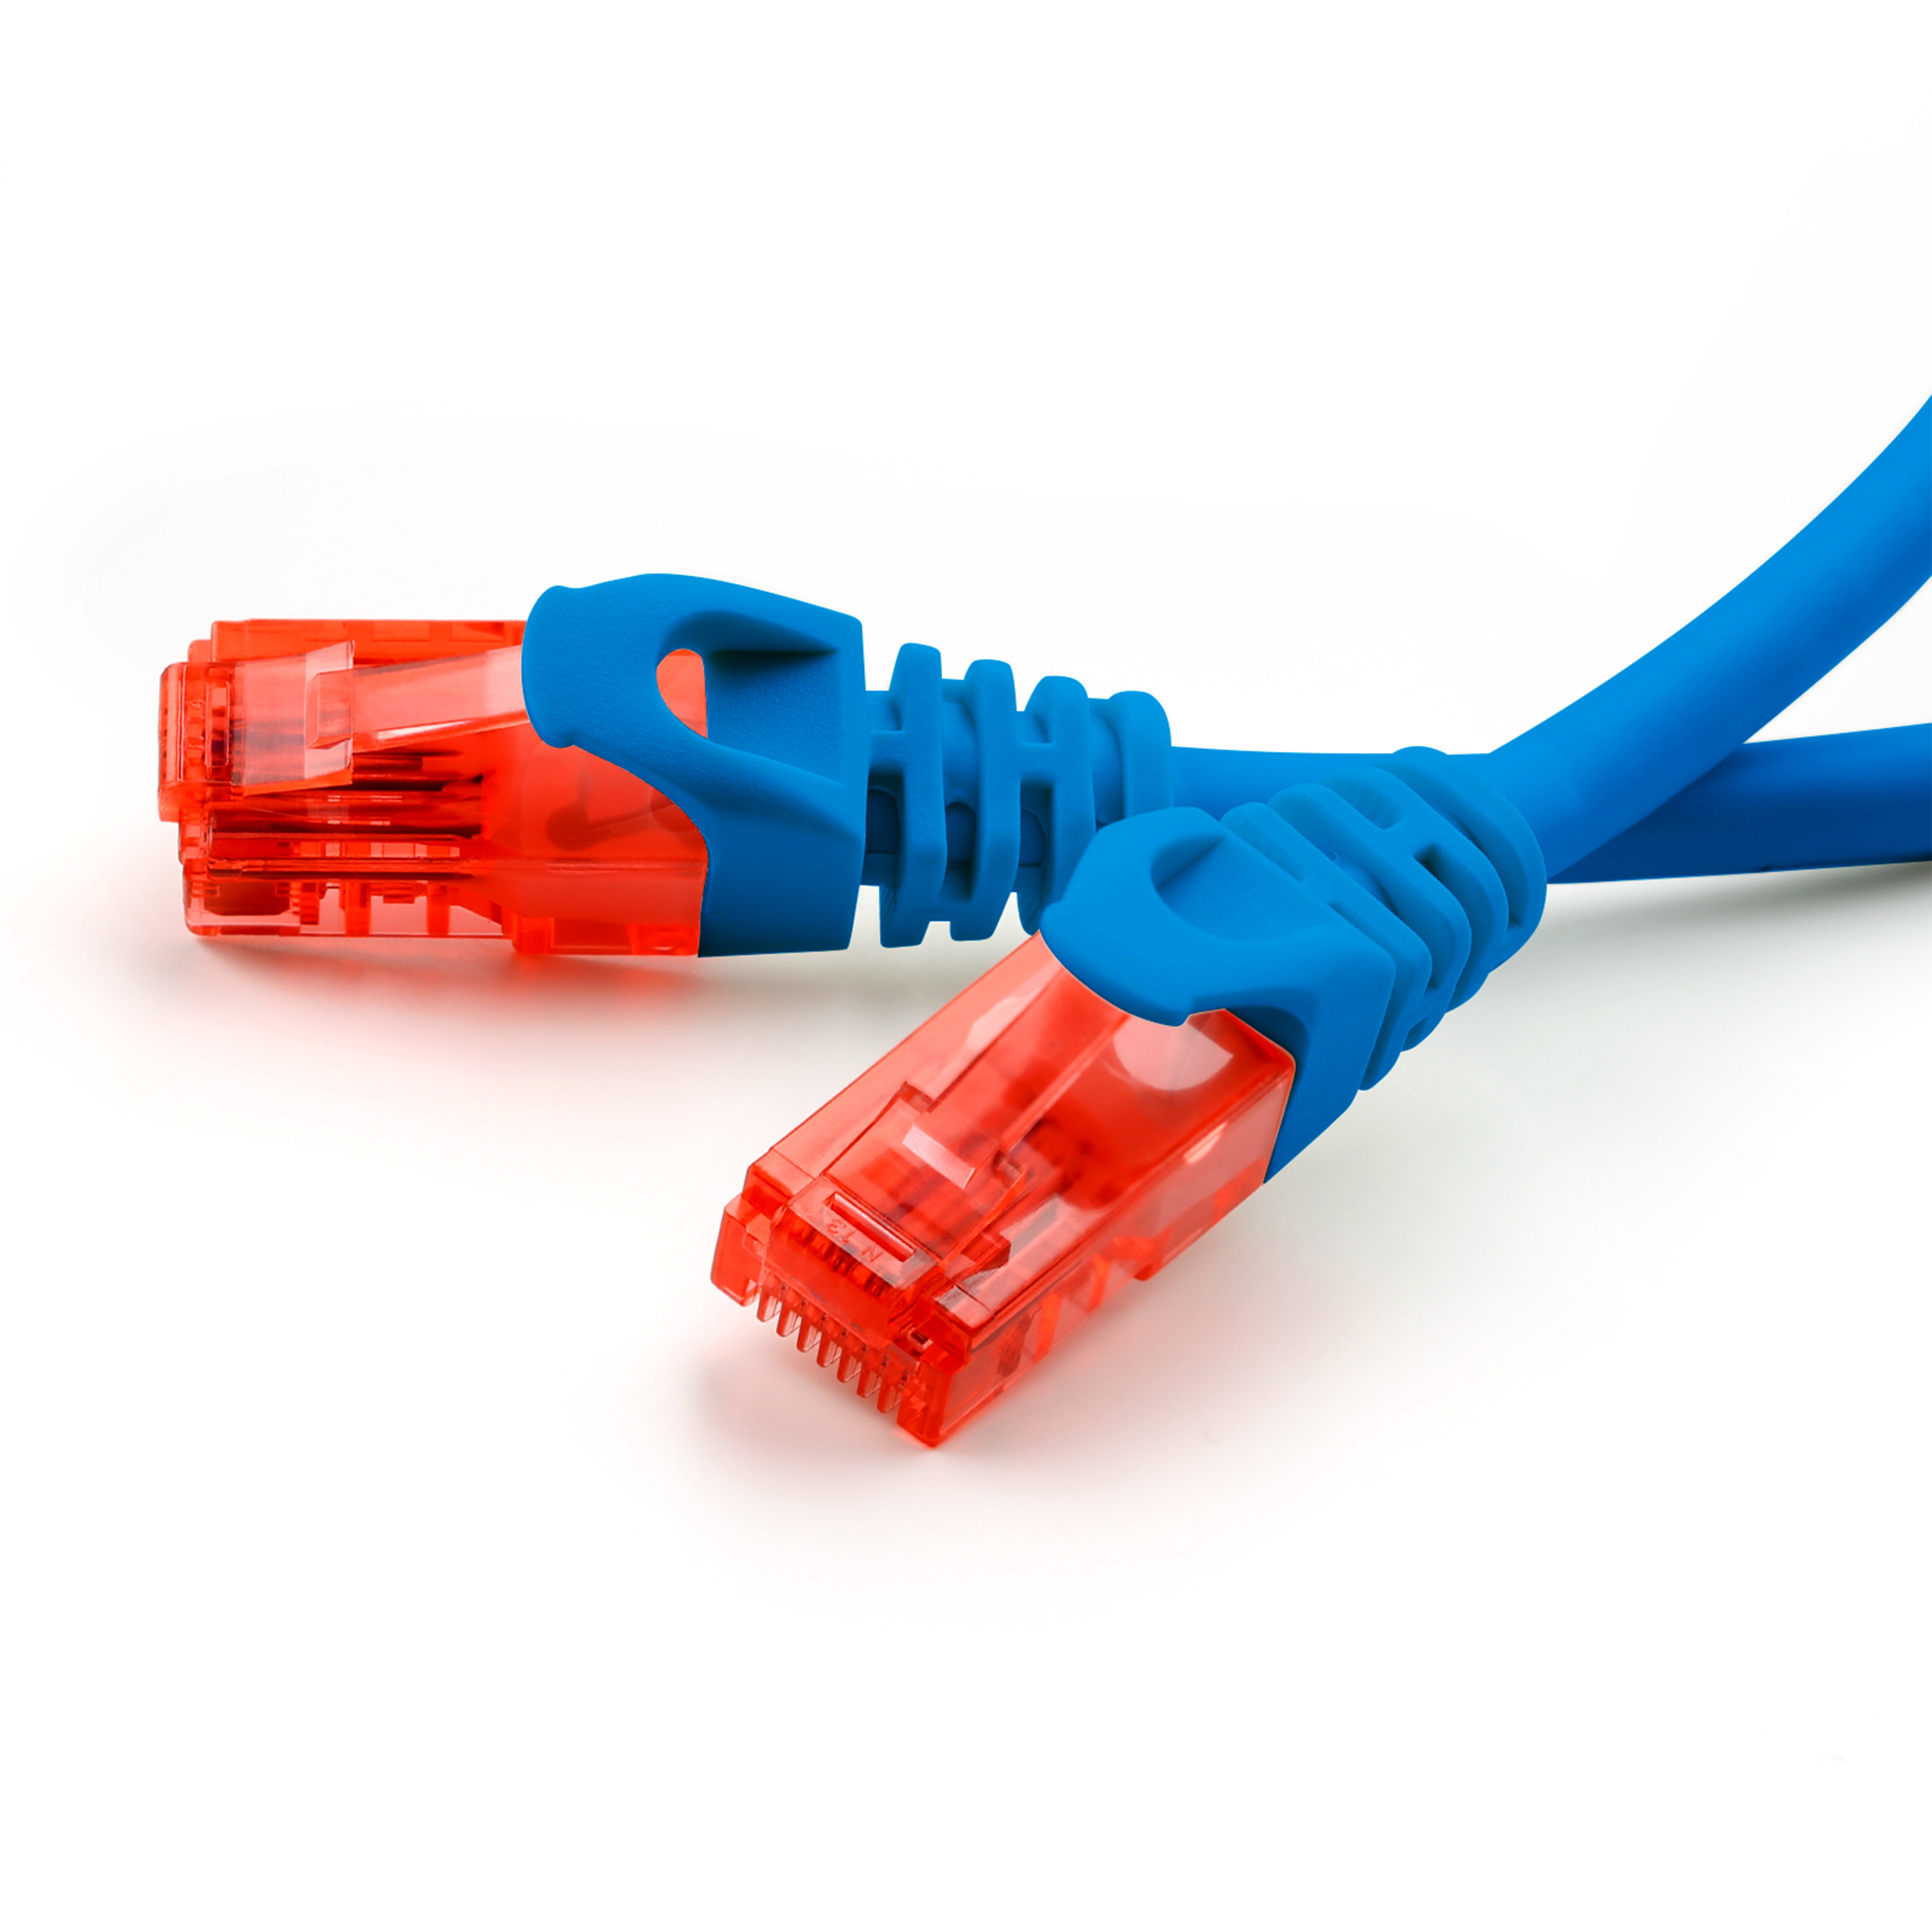 Patchkabel, blau CSL LAN Kabel, Cat6 0,5m